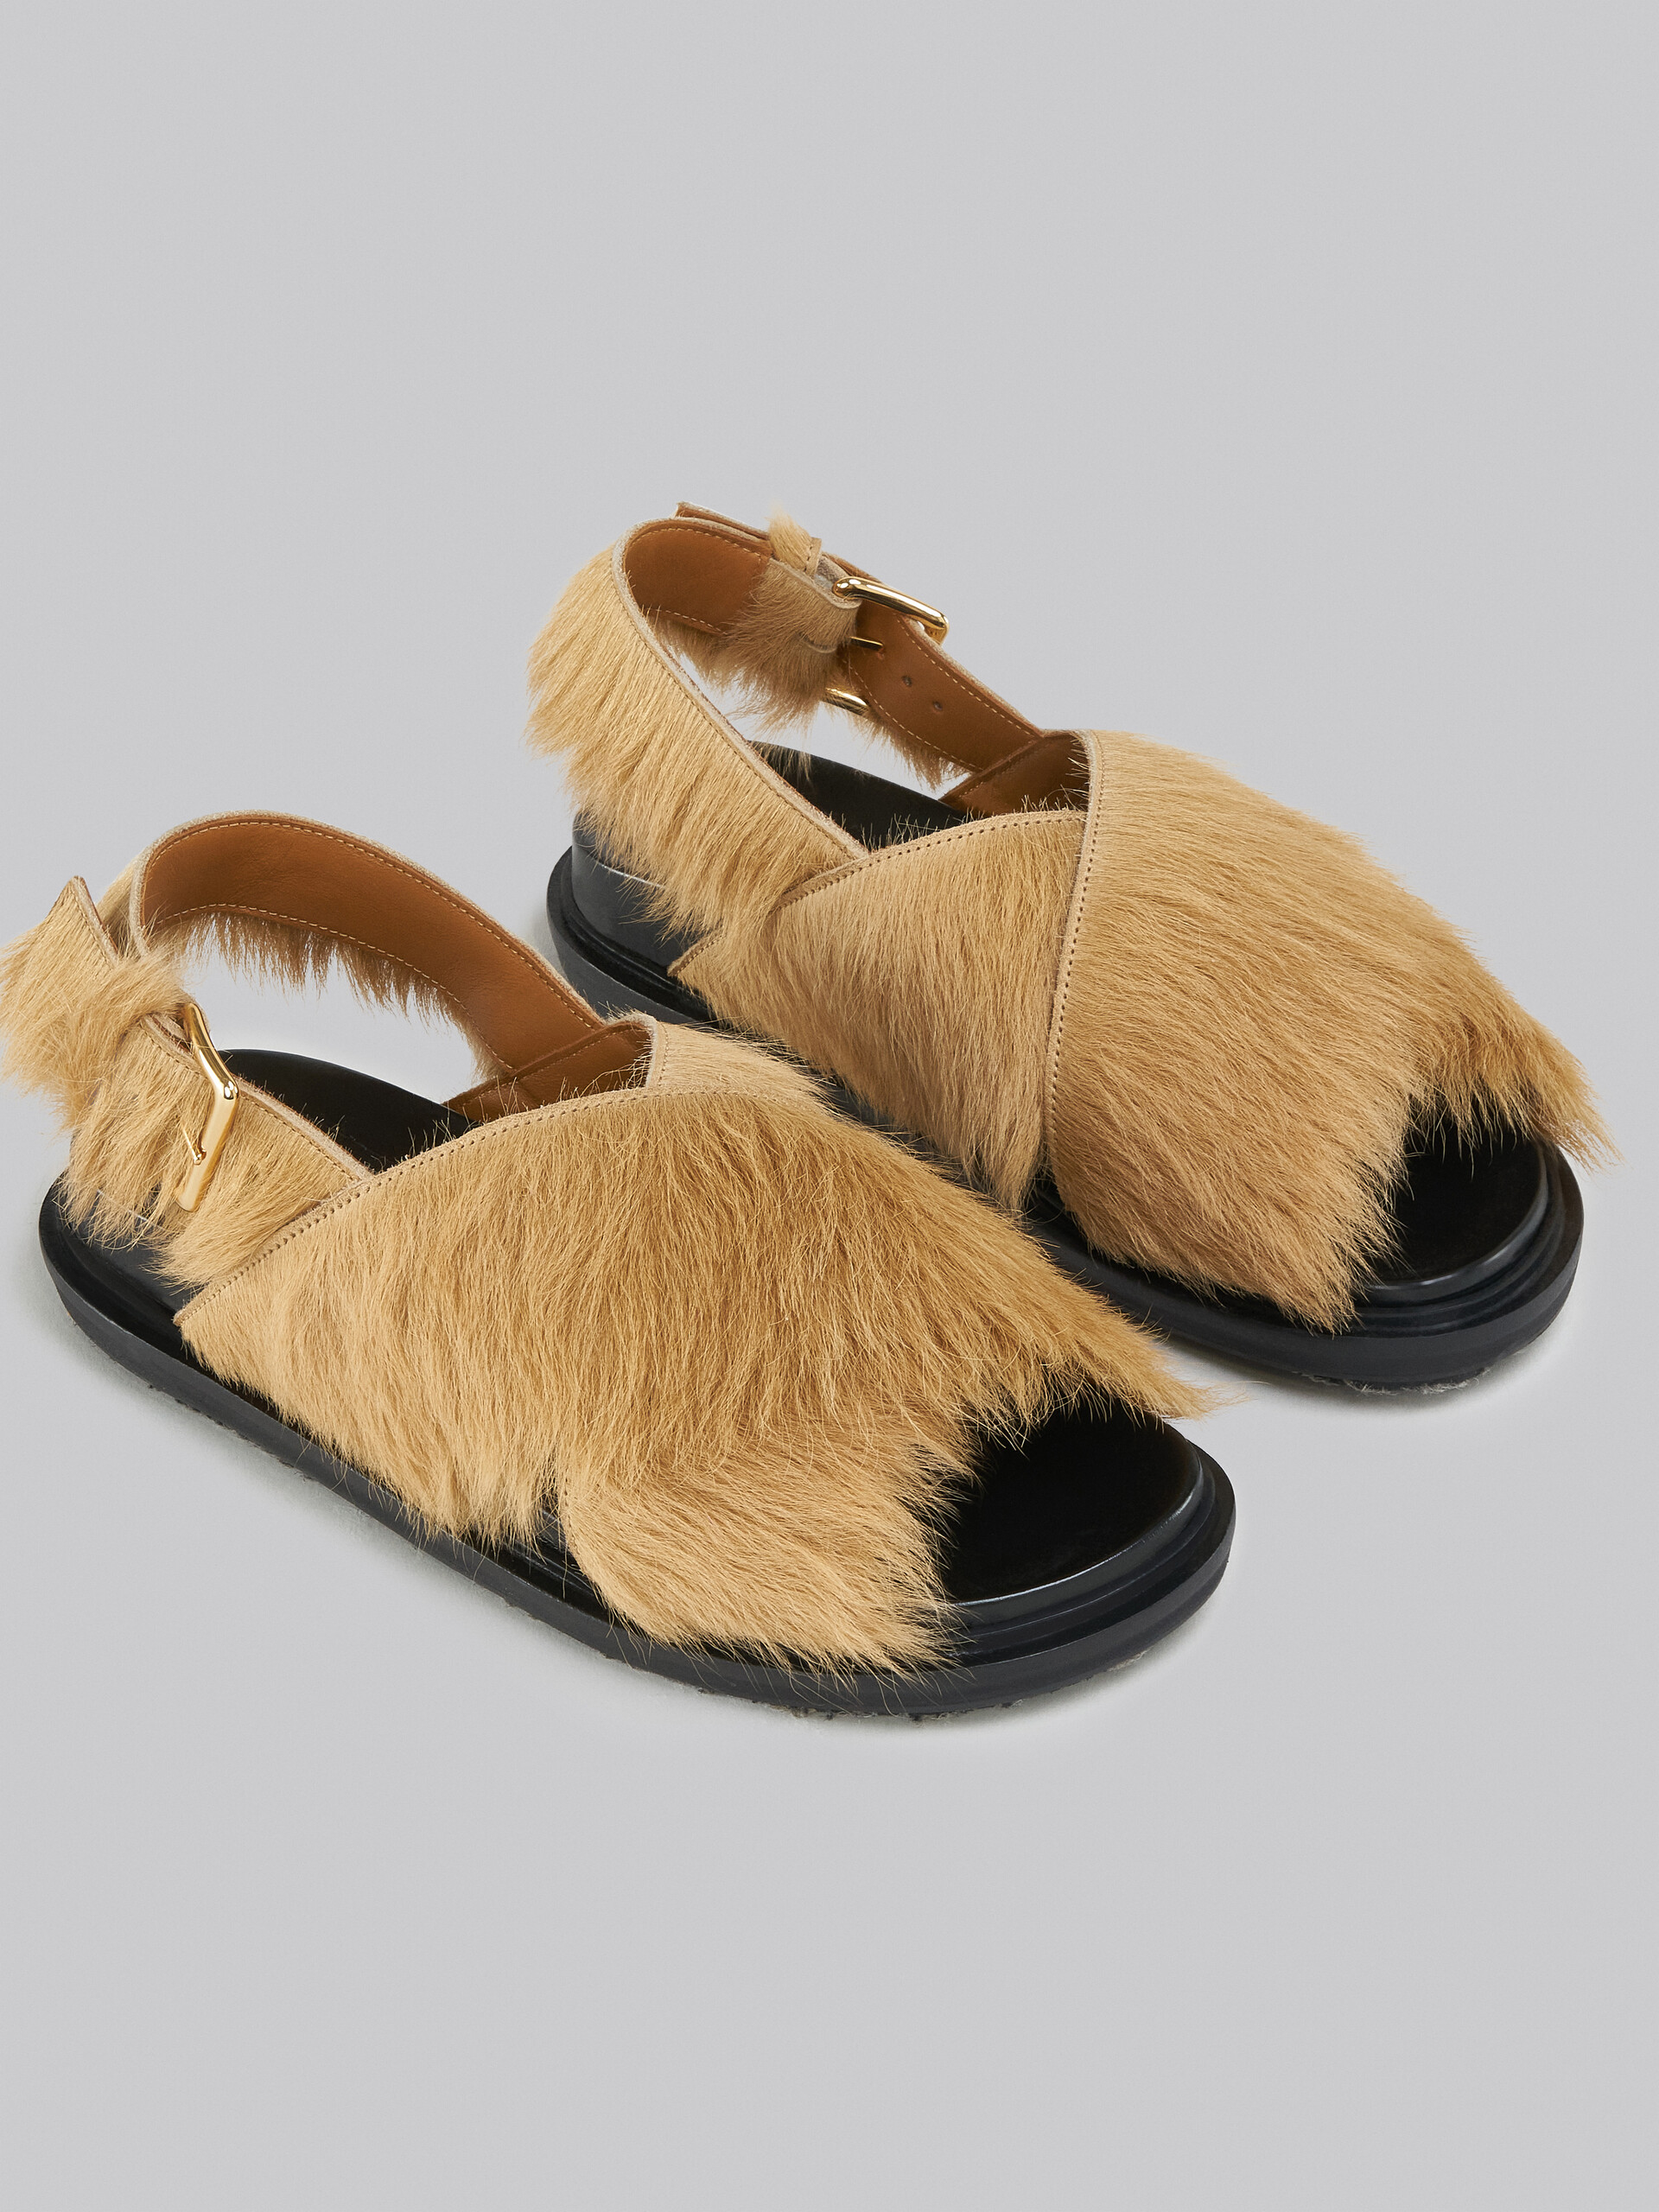 Beige long-hair calfskin Fussbett - Sandals - Image 5